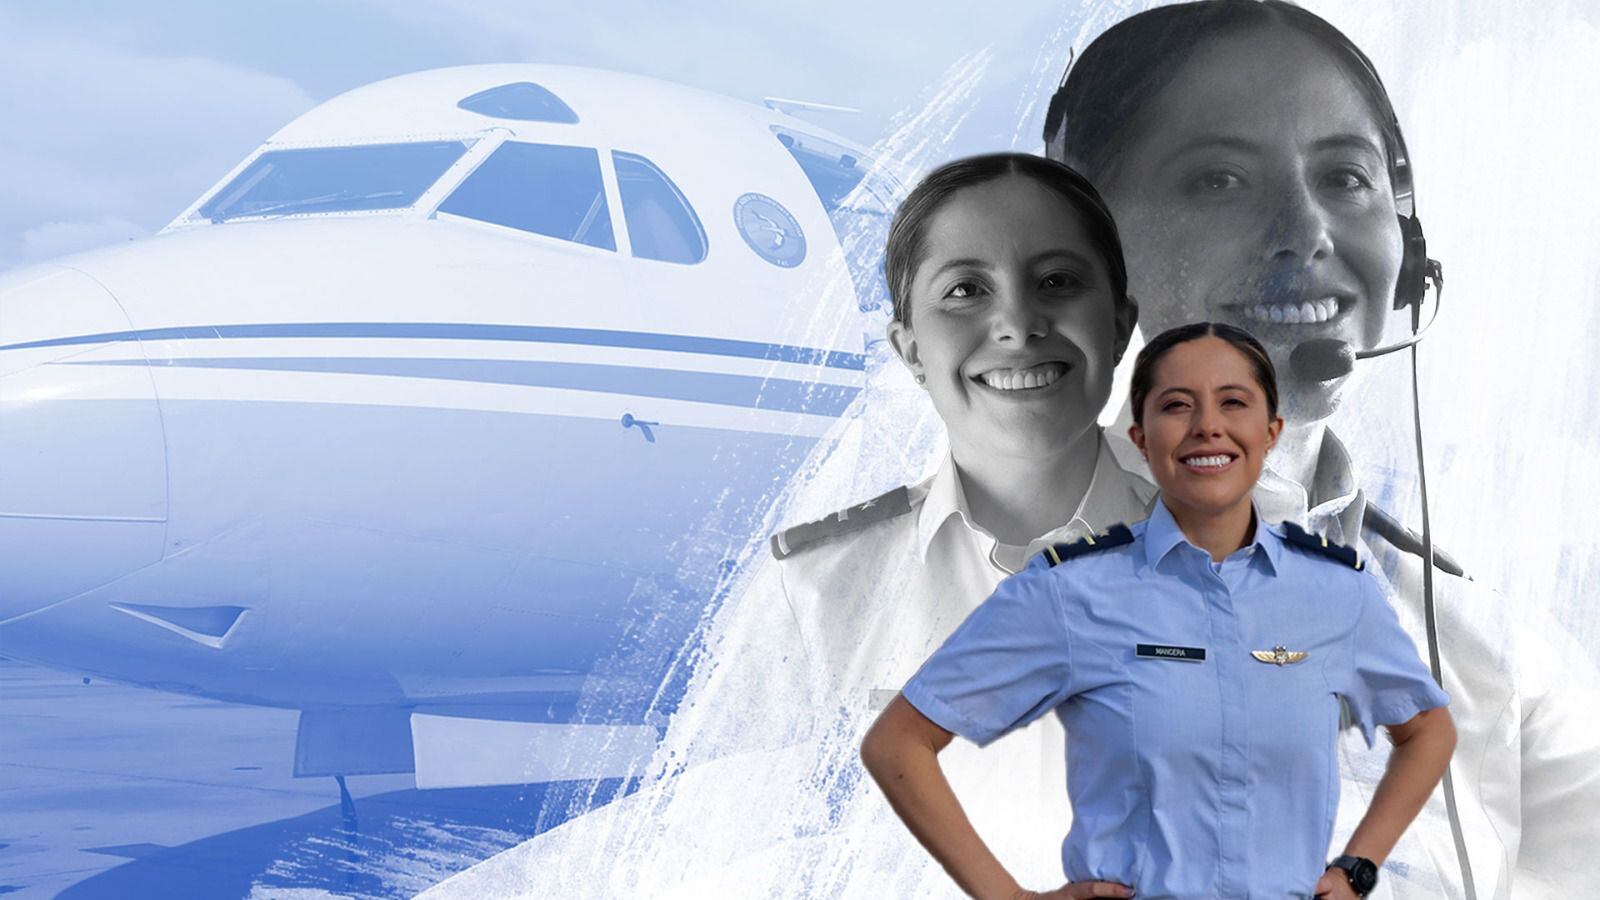 Con múltiples "primeras veces" en su haber, Mancera ha establecido un legado de igualdad y empoderamiento dentro de la aviación militar, abriendo caminos para la inclusión femenina en el ámbito - Crédito OFCOP CATAM / Edición Infobae Colombia